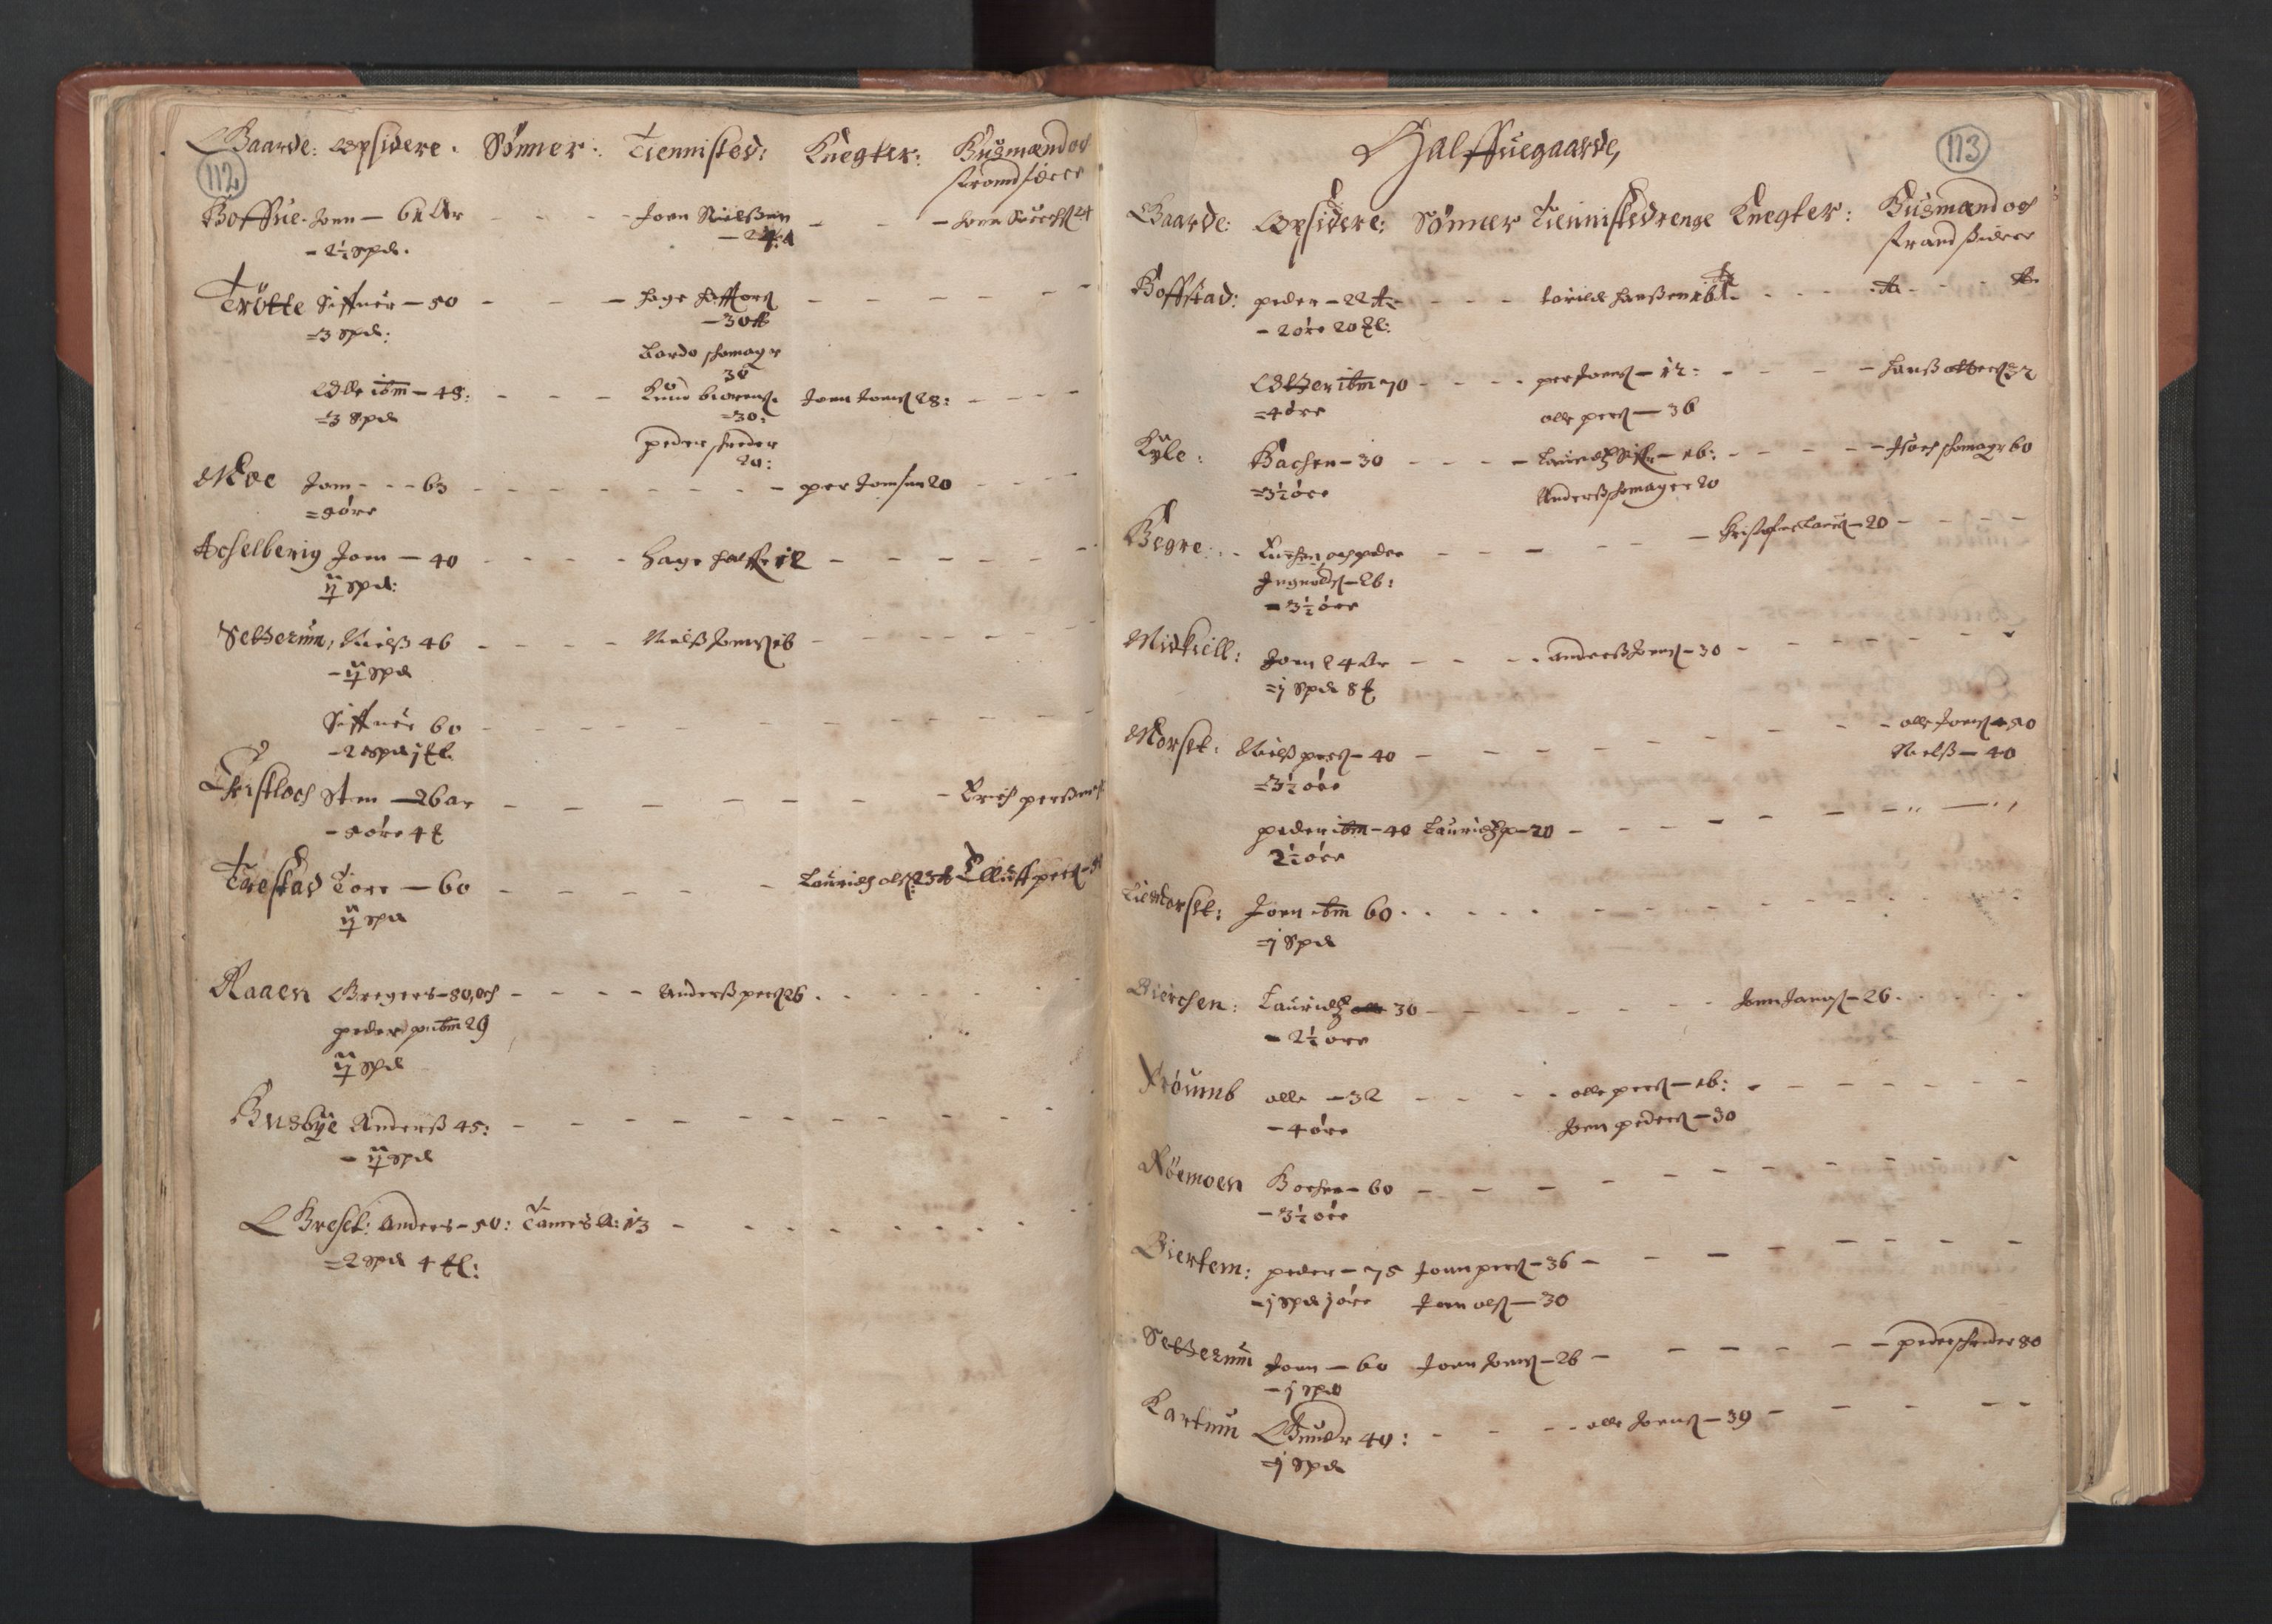 RA, Bailiff's Census 1664-1666, no. 19: Fosen fogderi, Inderøy fogderi, Selbu fogderi, Namdal fogderi and Stjørdal fogderi, 1664-1665, p. 112-113